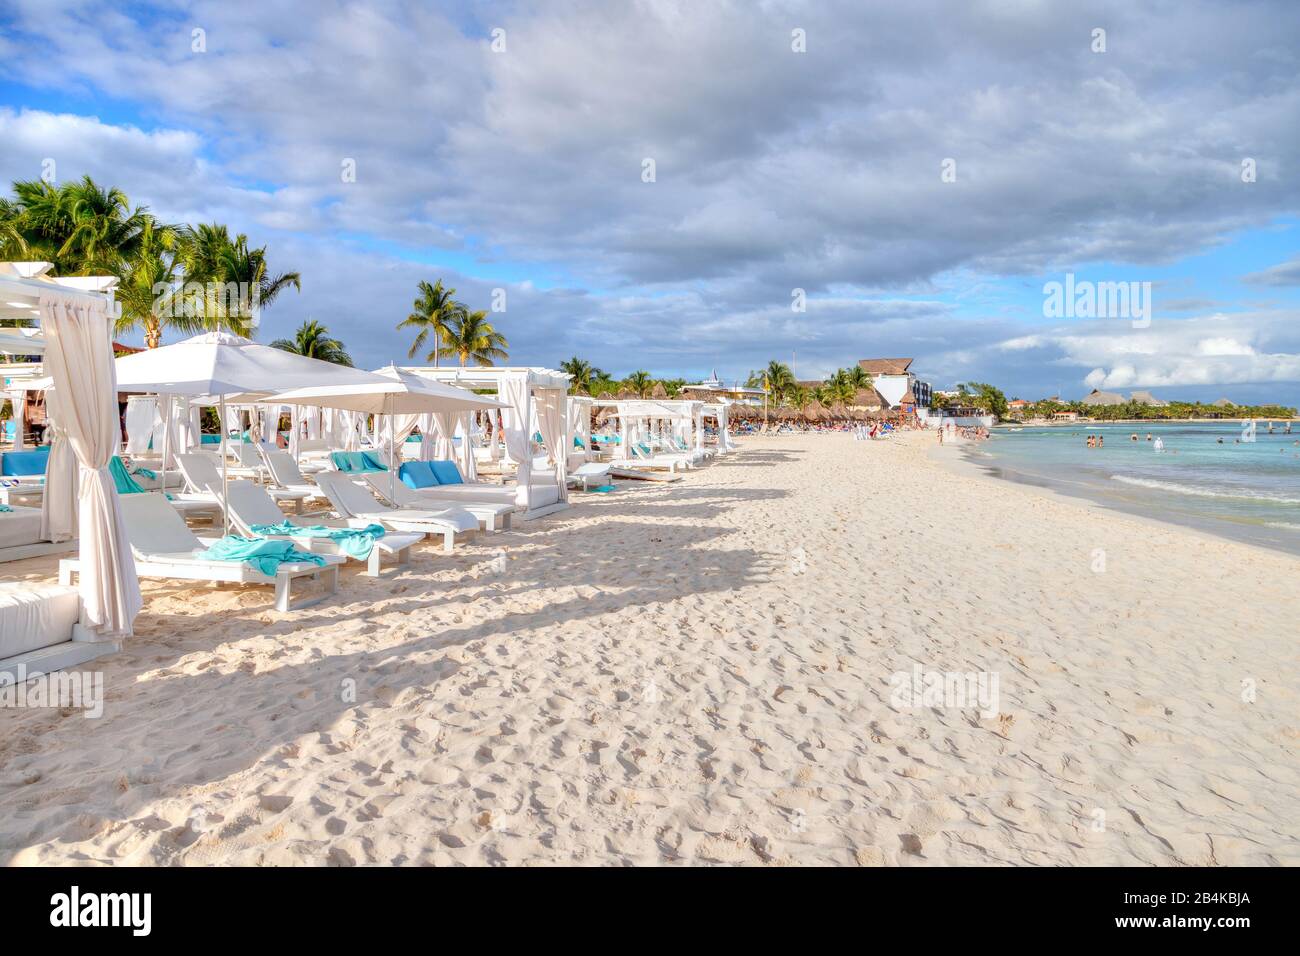 Rangées de lits et de chaises sur une plage tropicale ensoleillée et sablonneuse de la côte des Caraïbes de Cancun, au Mexique. Concept de vacances d'été ou d'escapade d'hiver amusant. Banque D'Images